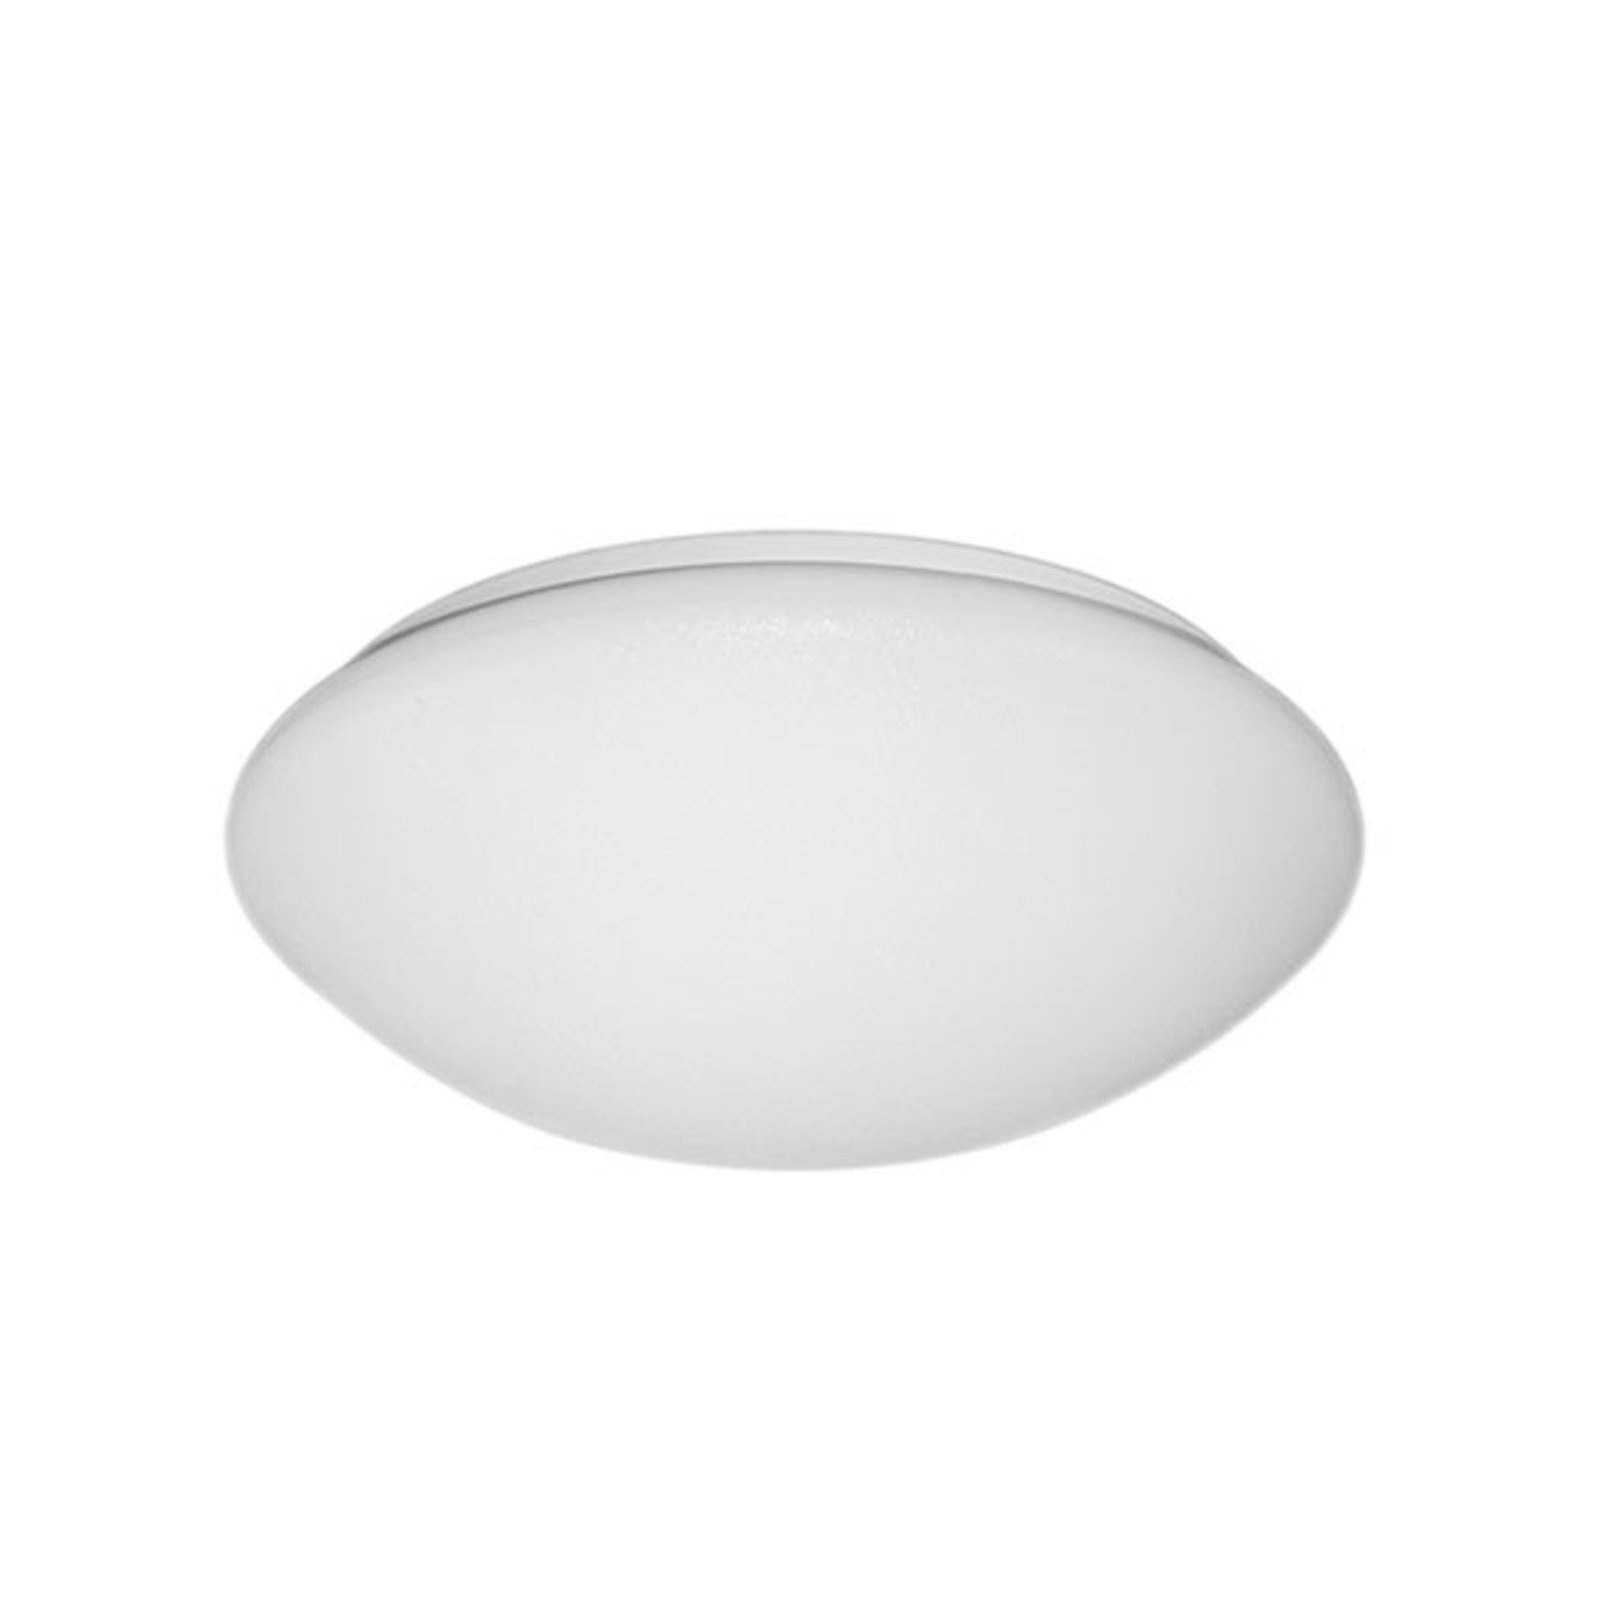 Round LED surface-mounted light, 14 W 3,000 K